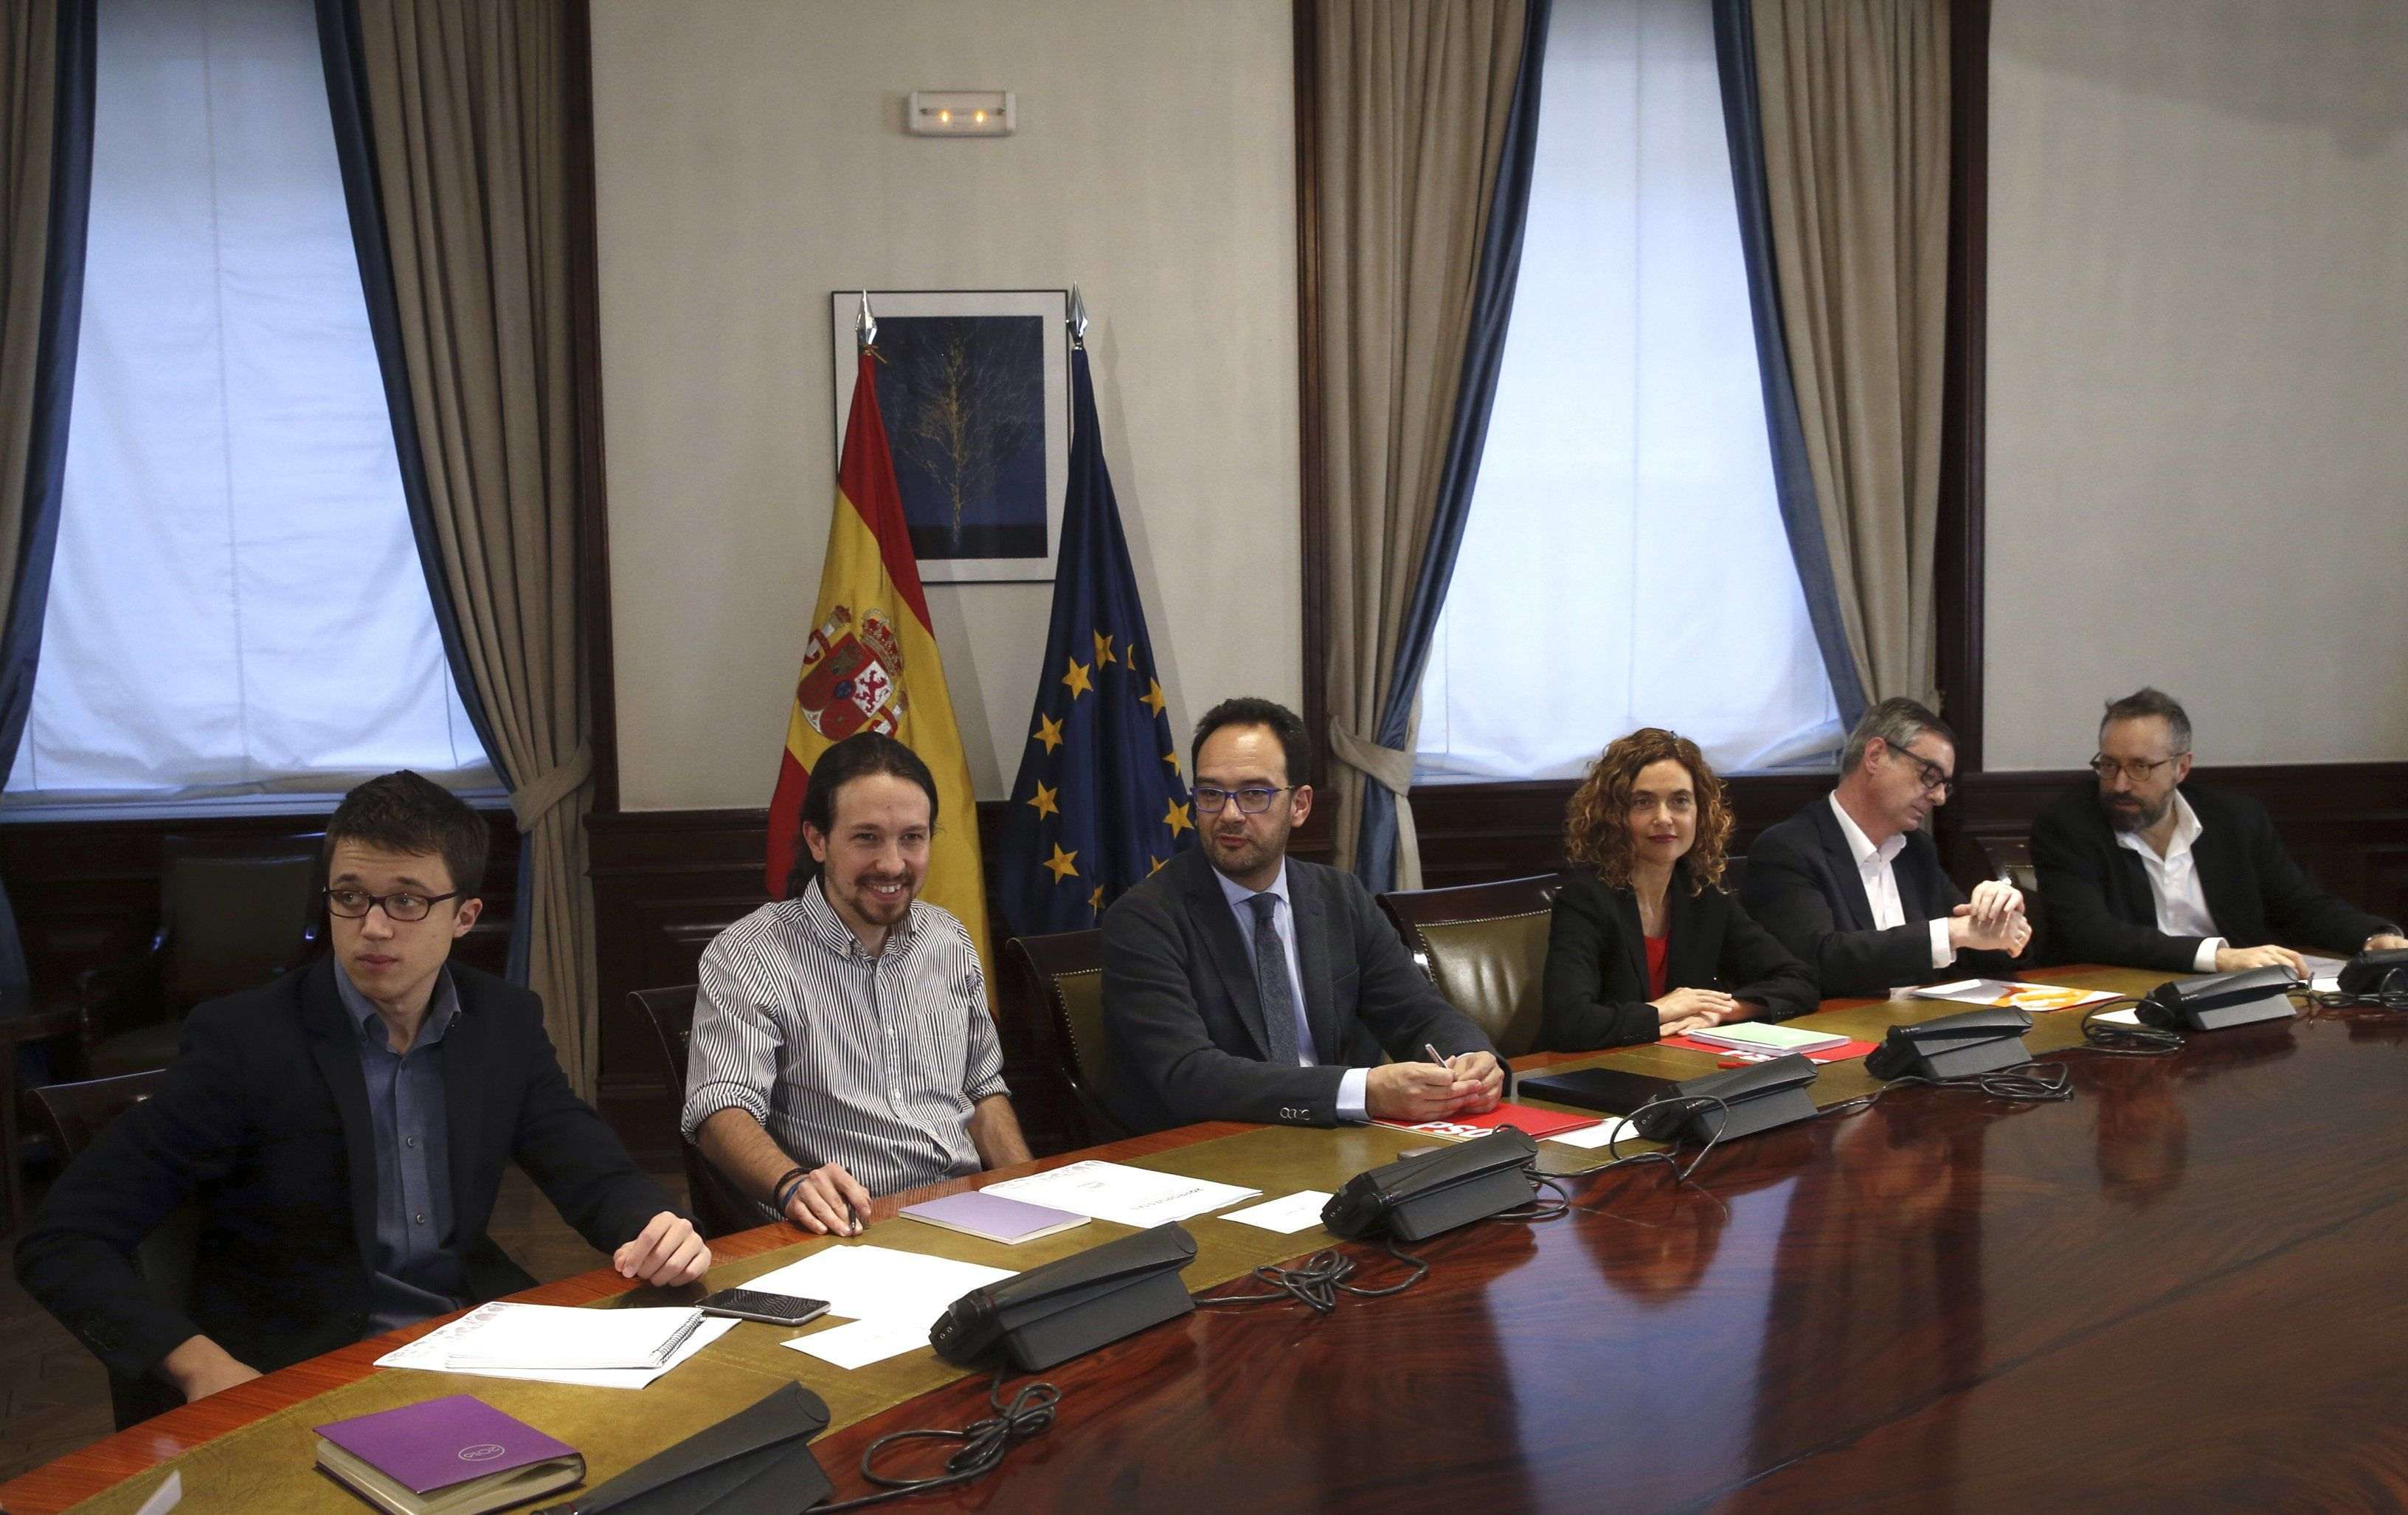 El fracàs de Sánchez desplaça l'atenció cap a PP i Podemos